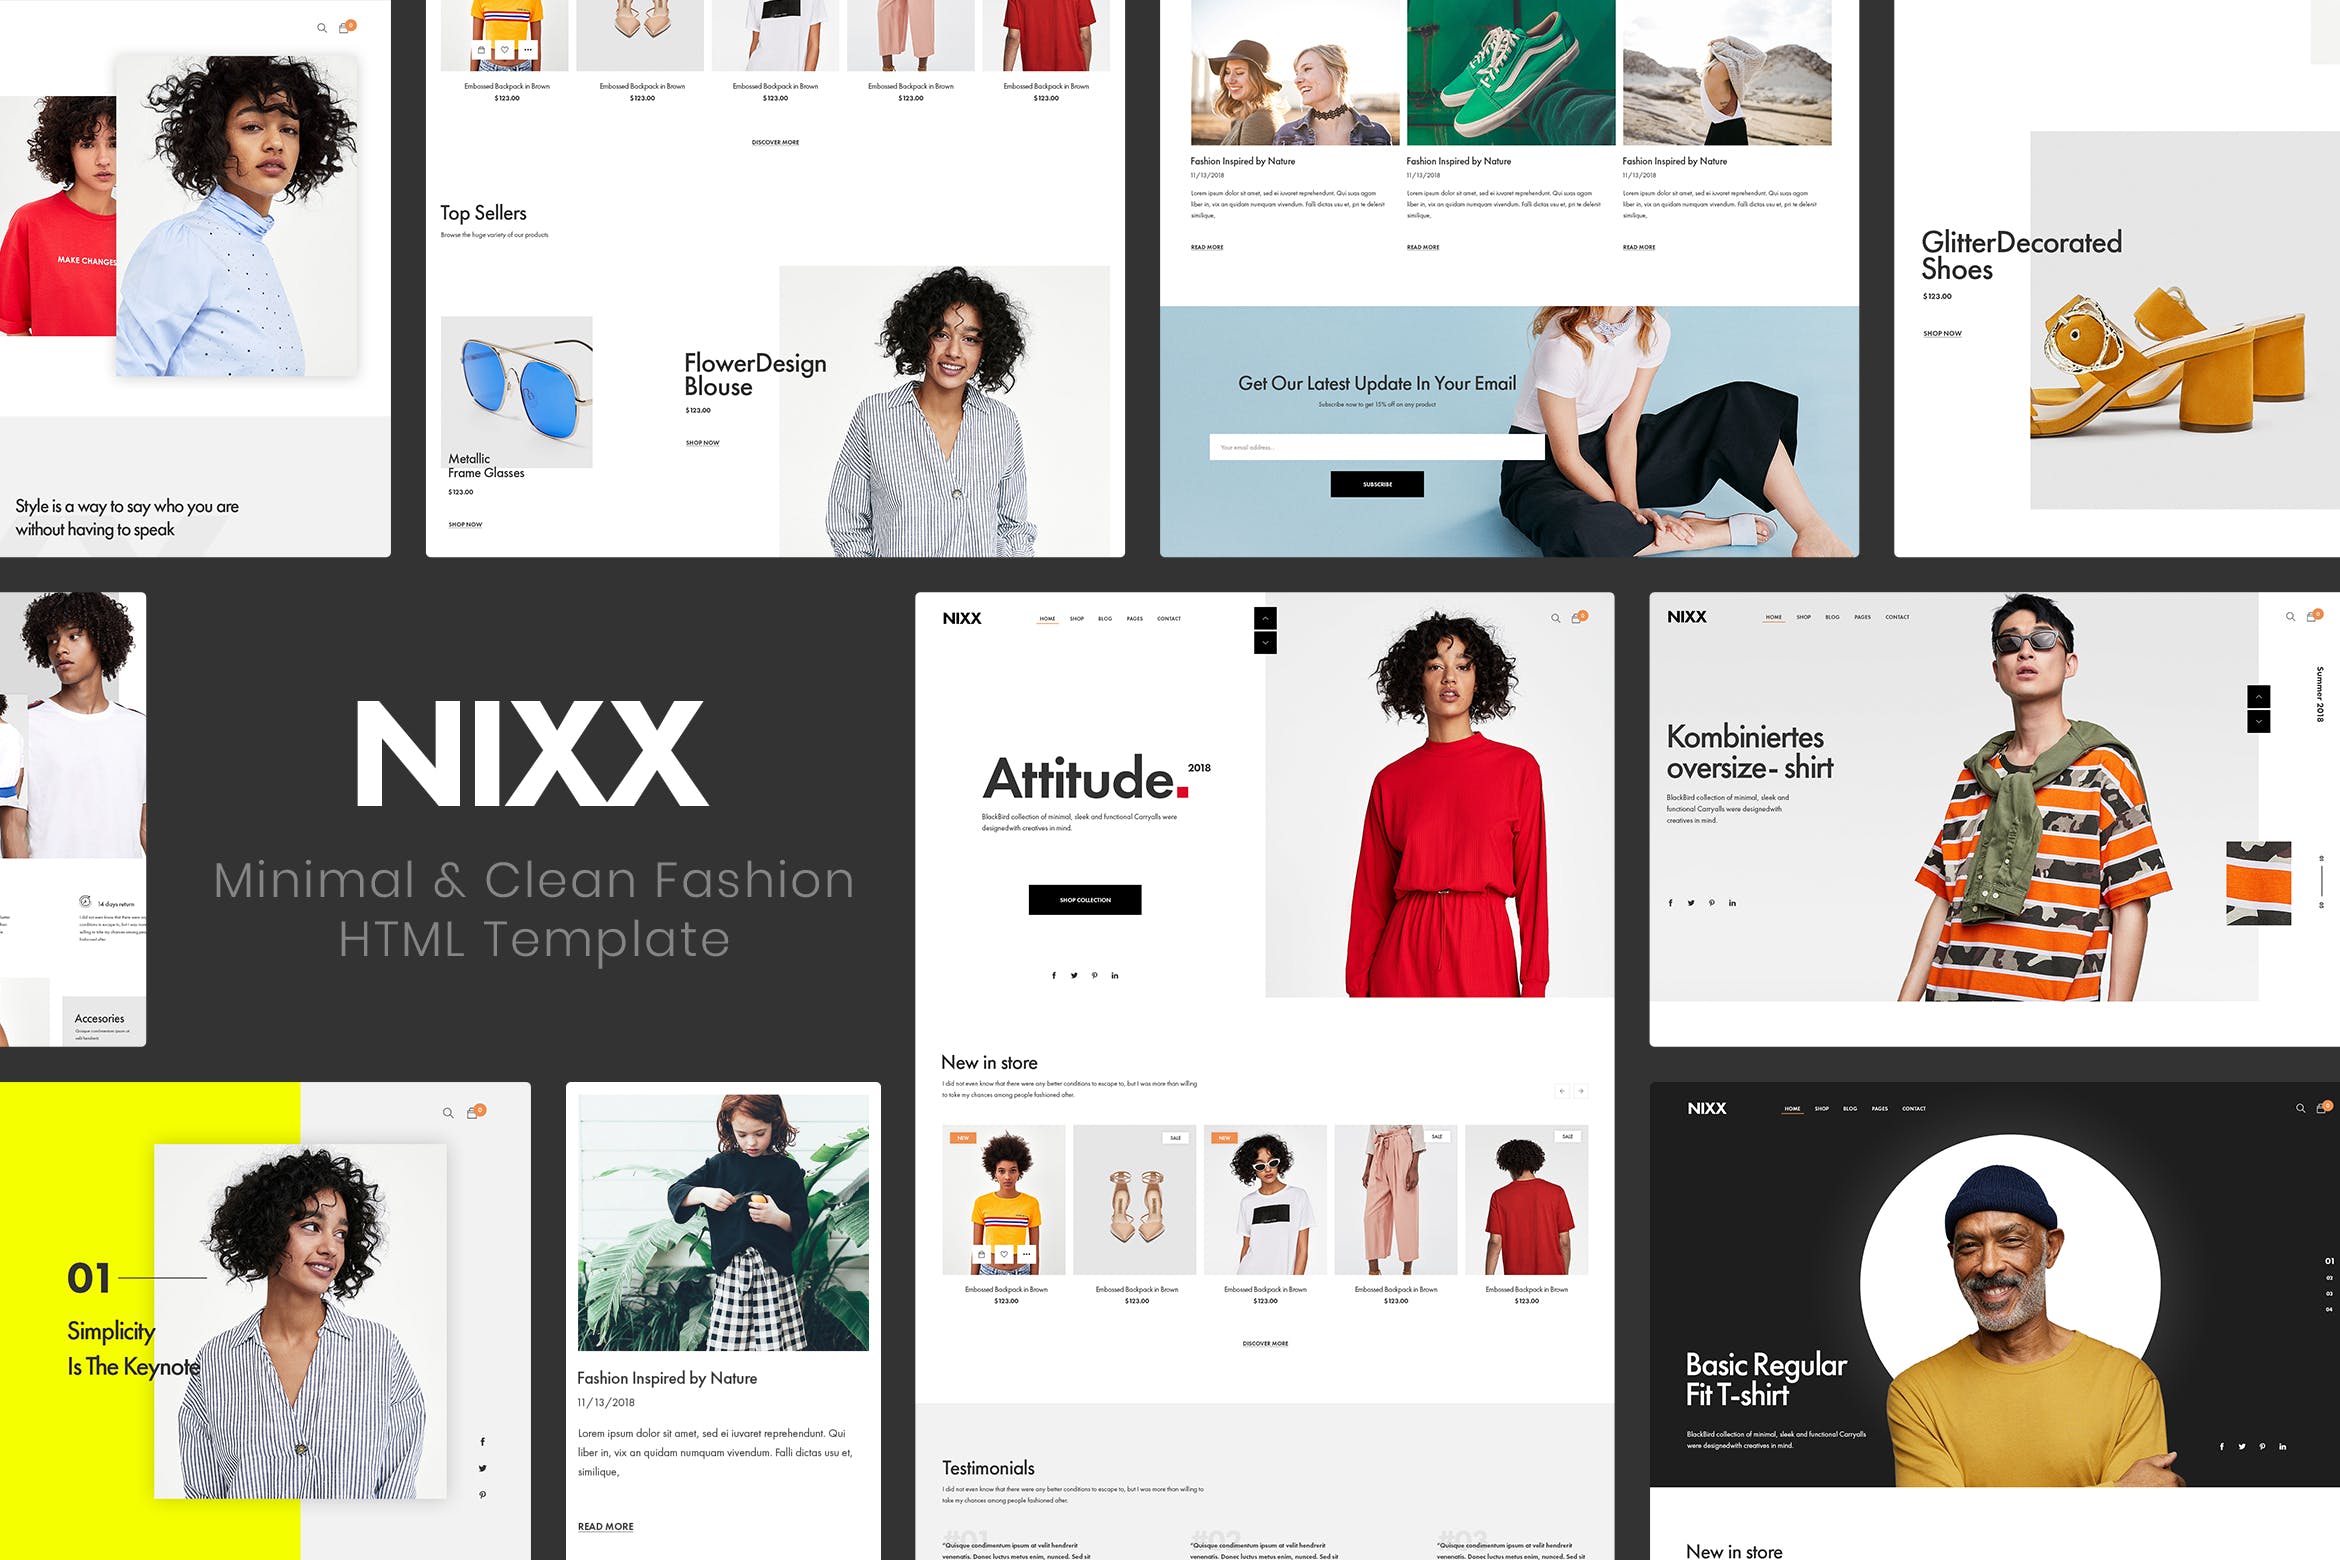 极简主义时尚主题网站HTML网上商城模板16图库精选 NIXX | Minimal & Clean Fashion HTML Template插图